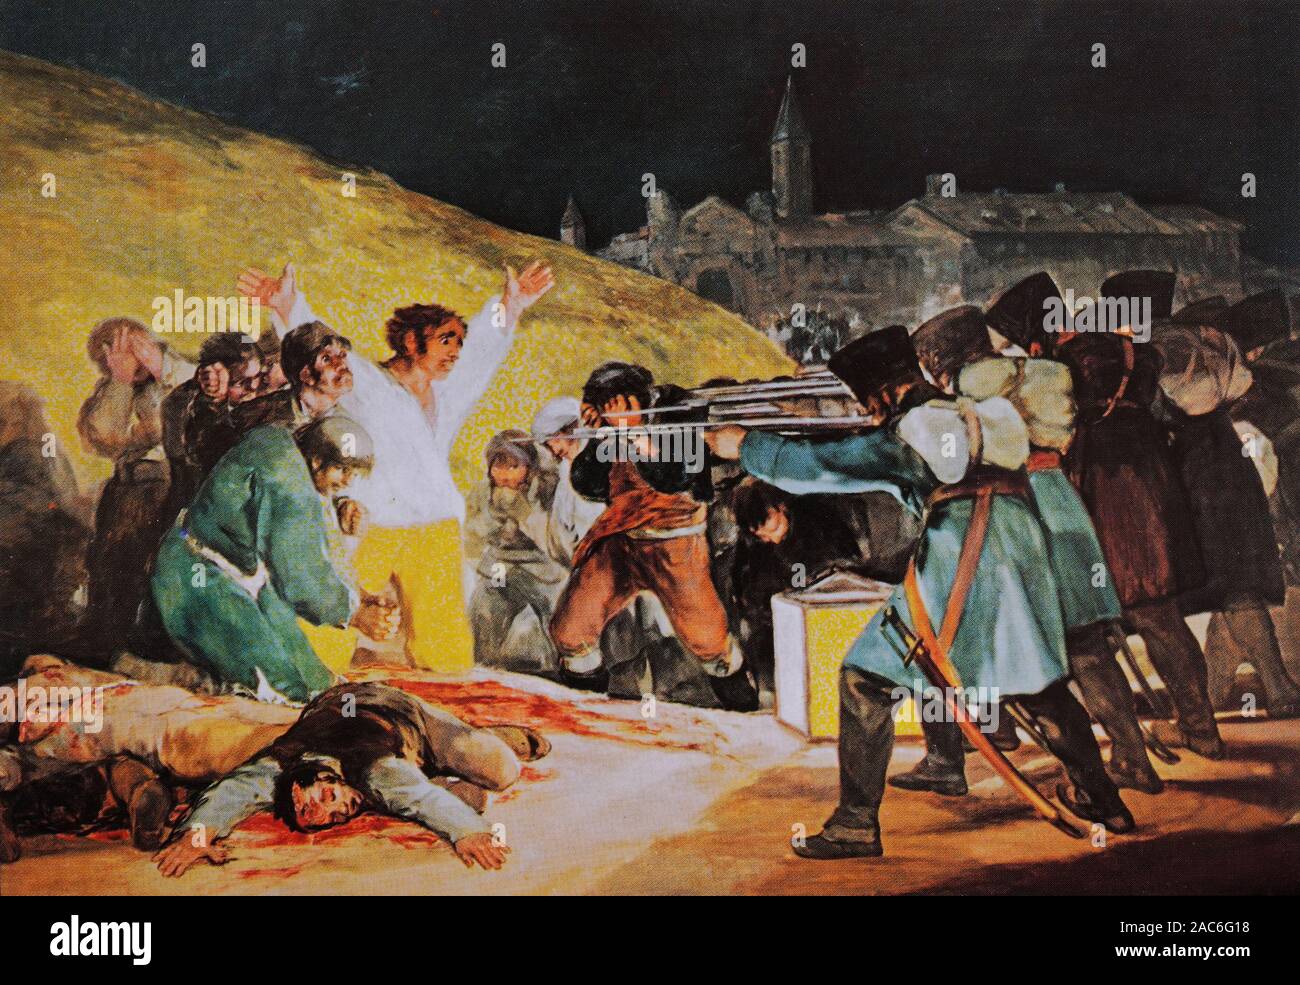 Imagen postal de medias tintas: "El Tercero de mayo de 1808' (1814), óleo de Francisco de Goya (1746-1828) - Español representando la resistencia a la ocupación francesa en la Guerra Peninsular Foto de stock